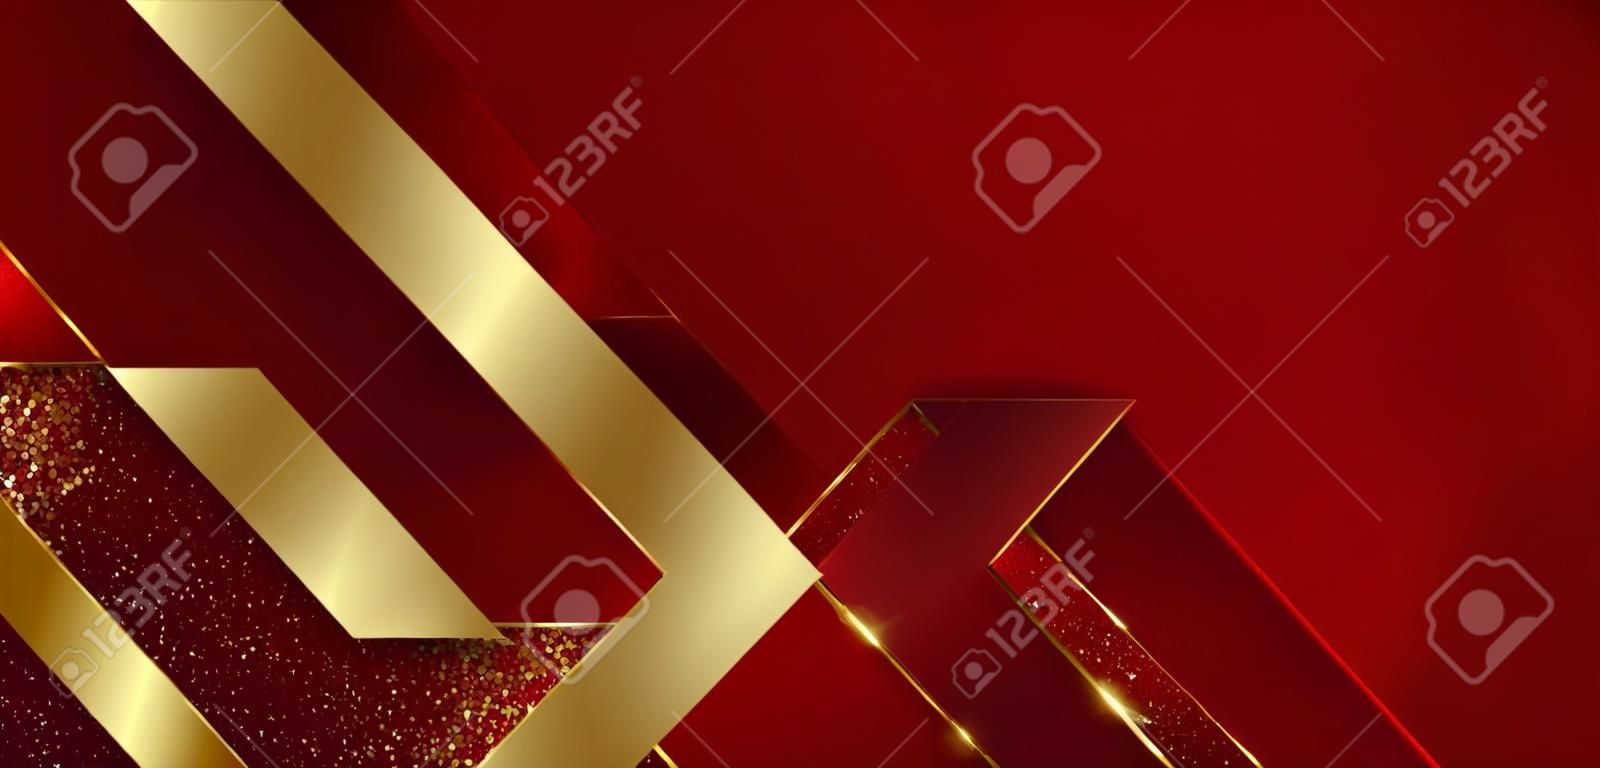 Streszczenie 3d nowoczesny luksusowy szablon czerwony kolor i złota strzałka tło ze złotym brokatem linii lekki blask. ilustracja wektorowa